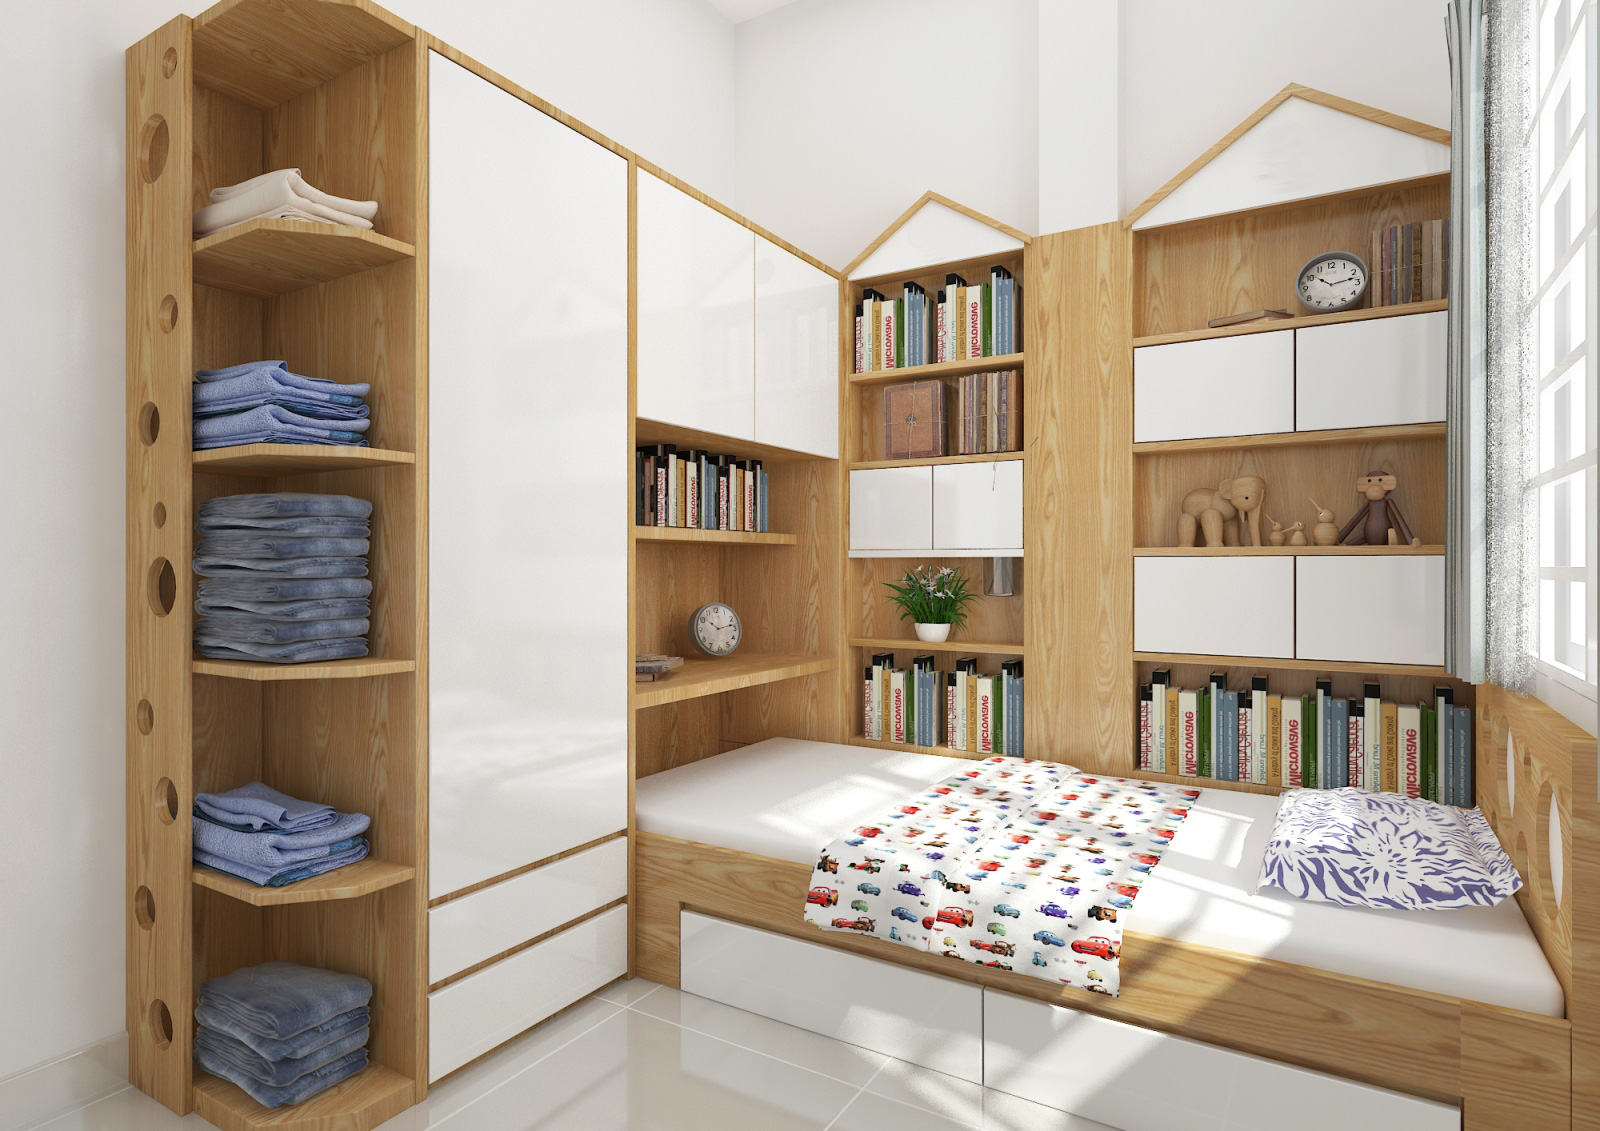 Hình ảnh giường hộp nối liền giá sách và tủ quần áo là lựa chọn lý tưởng cho phòng ngủ nhỏ hẹp.